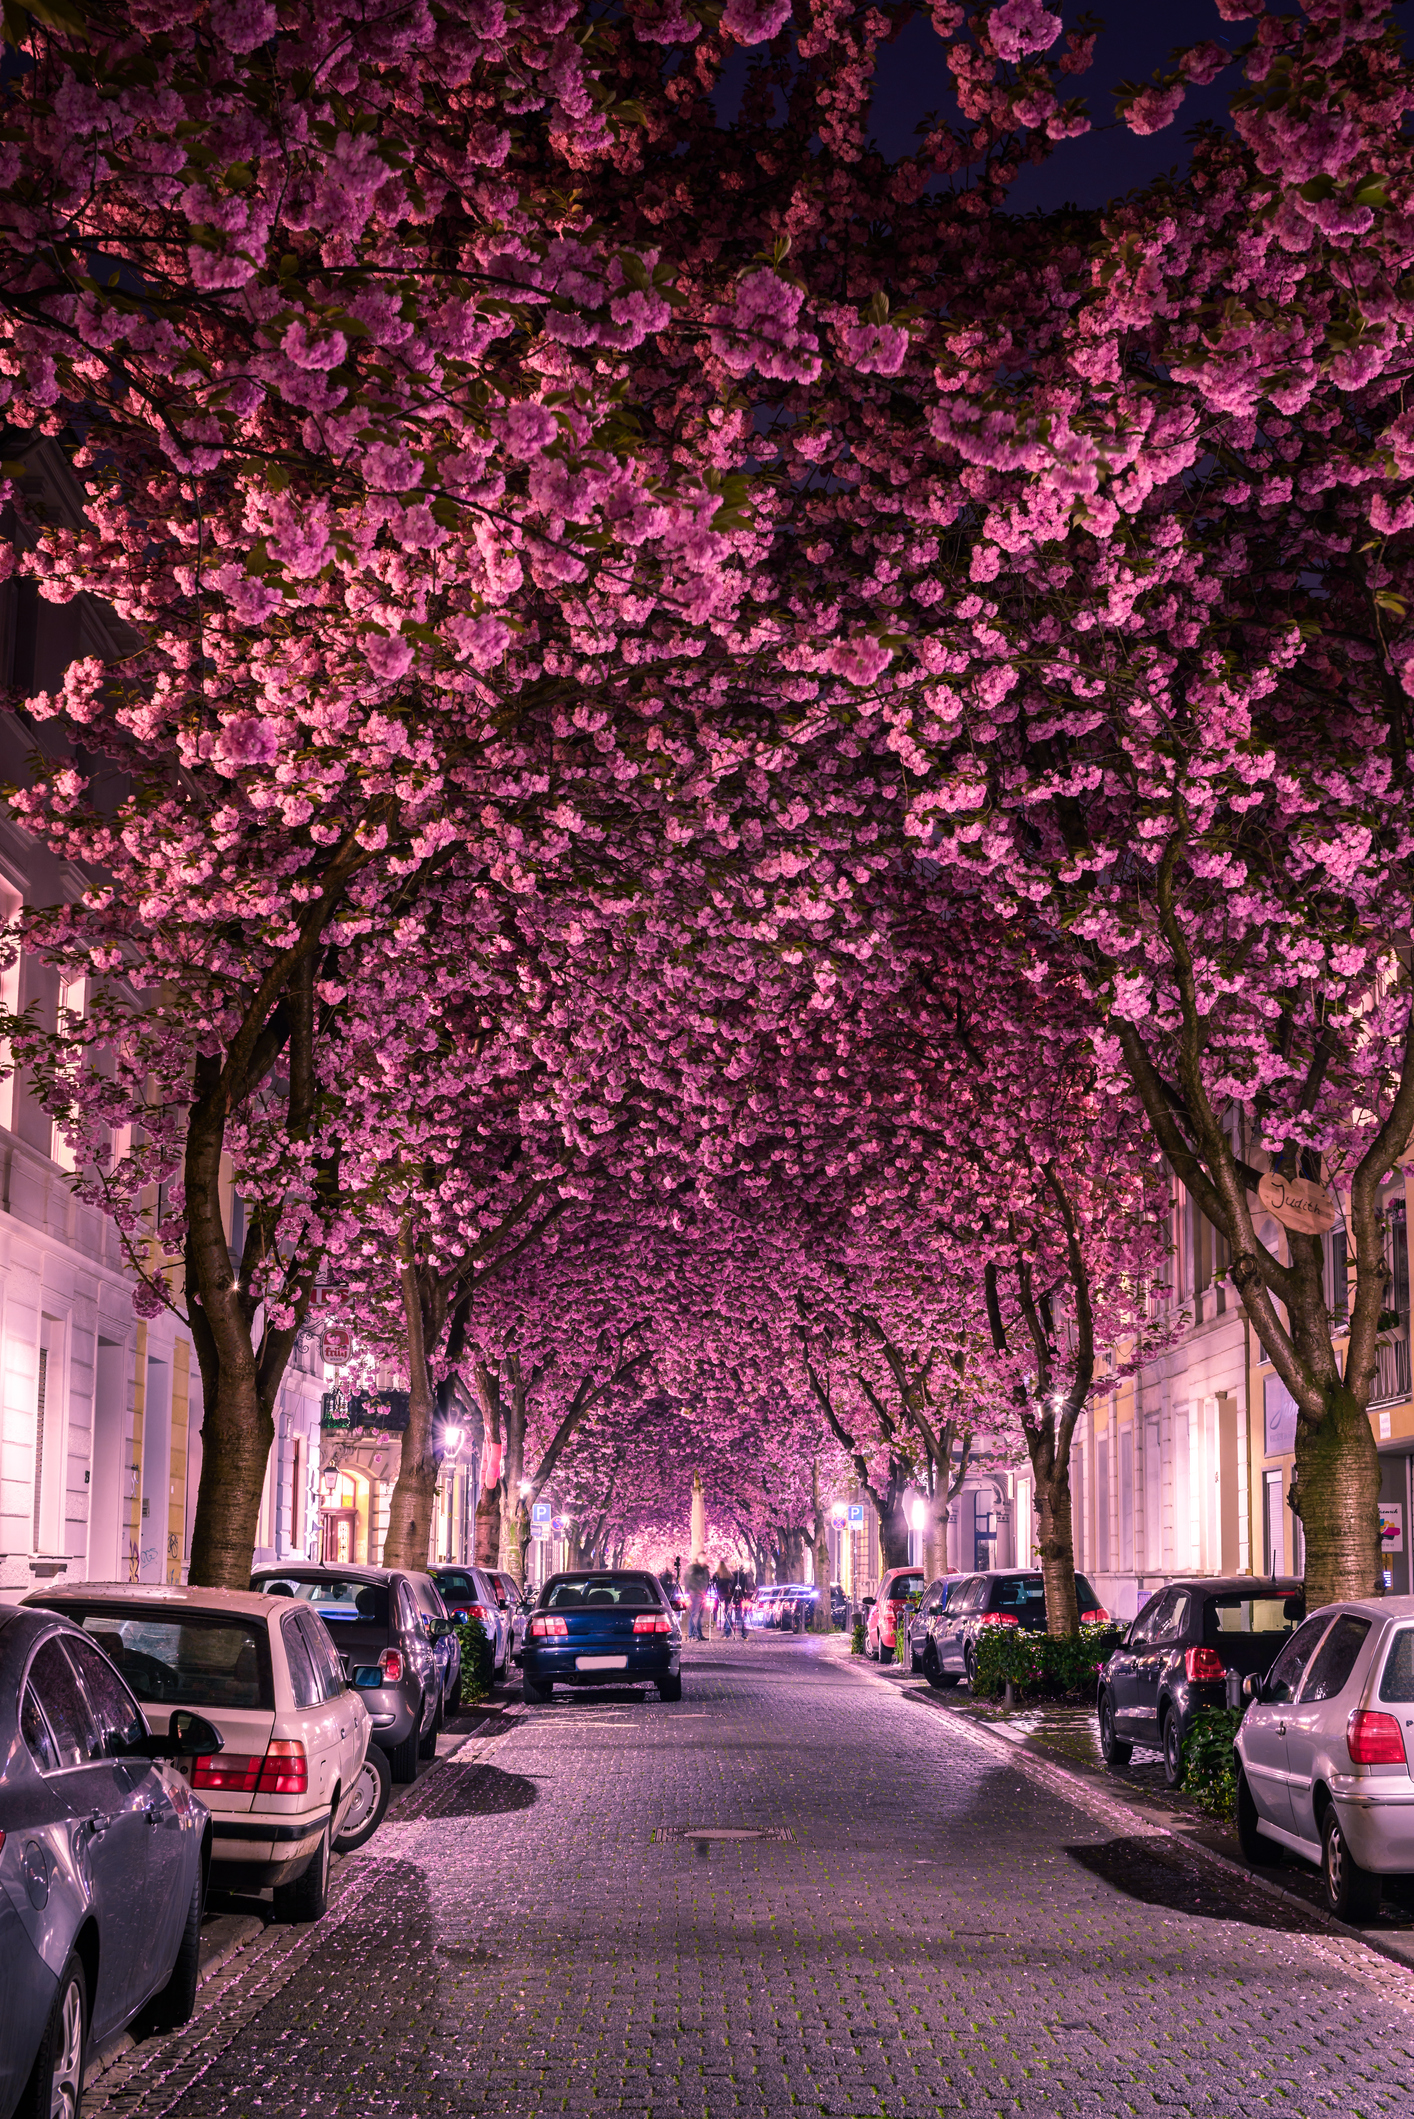 Cseresznyevirágos sugárút Bonnban, Németországban 